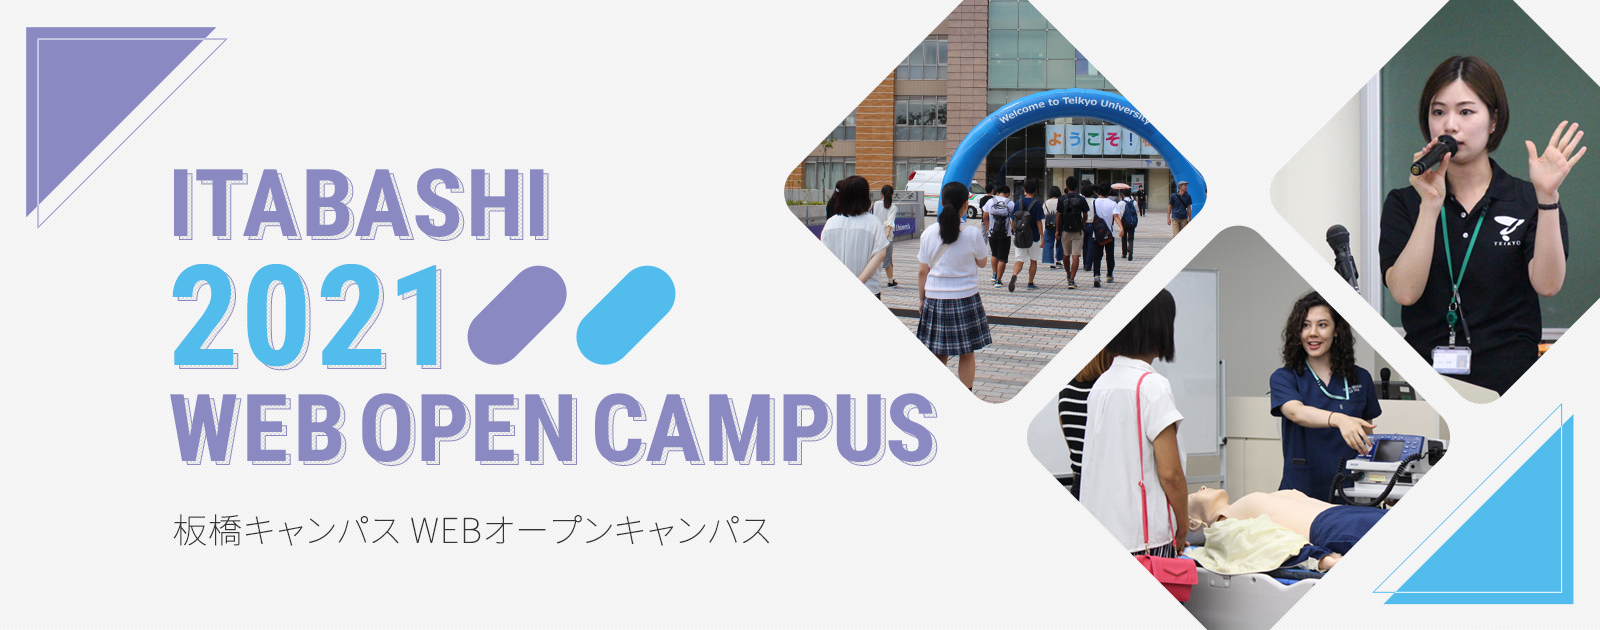 板橋キャンパス WEBオープンキャンパス2021